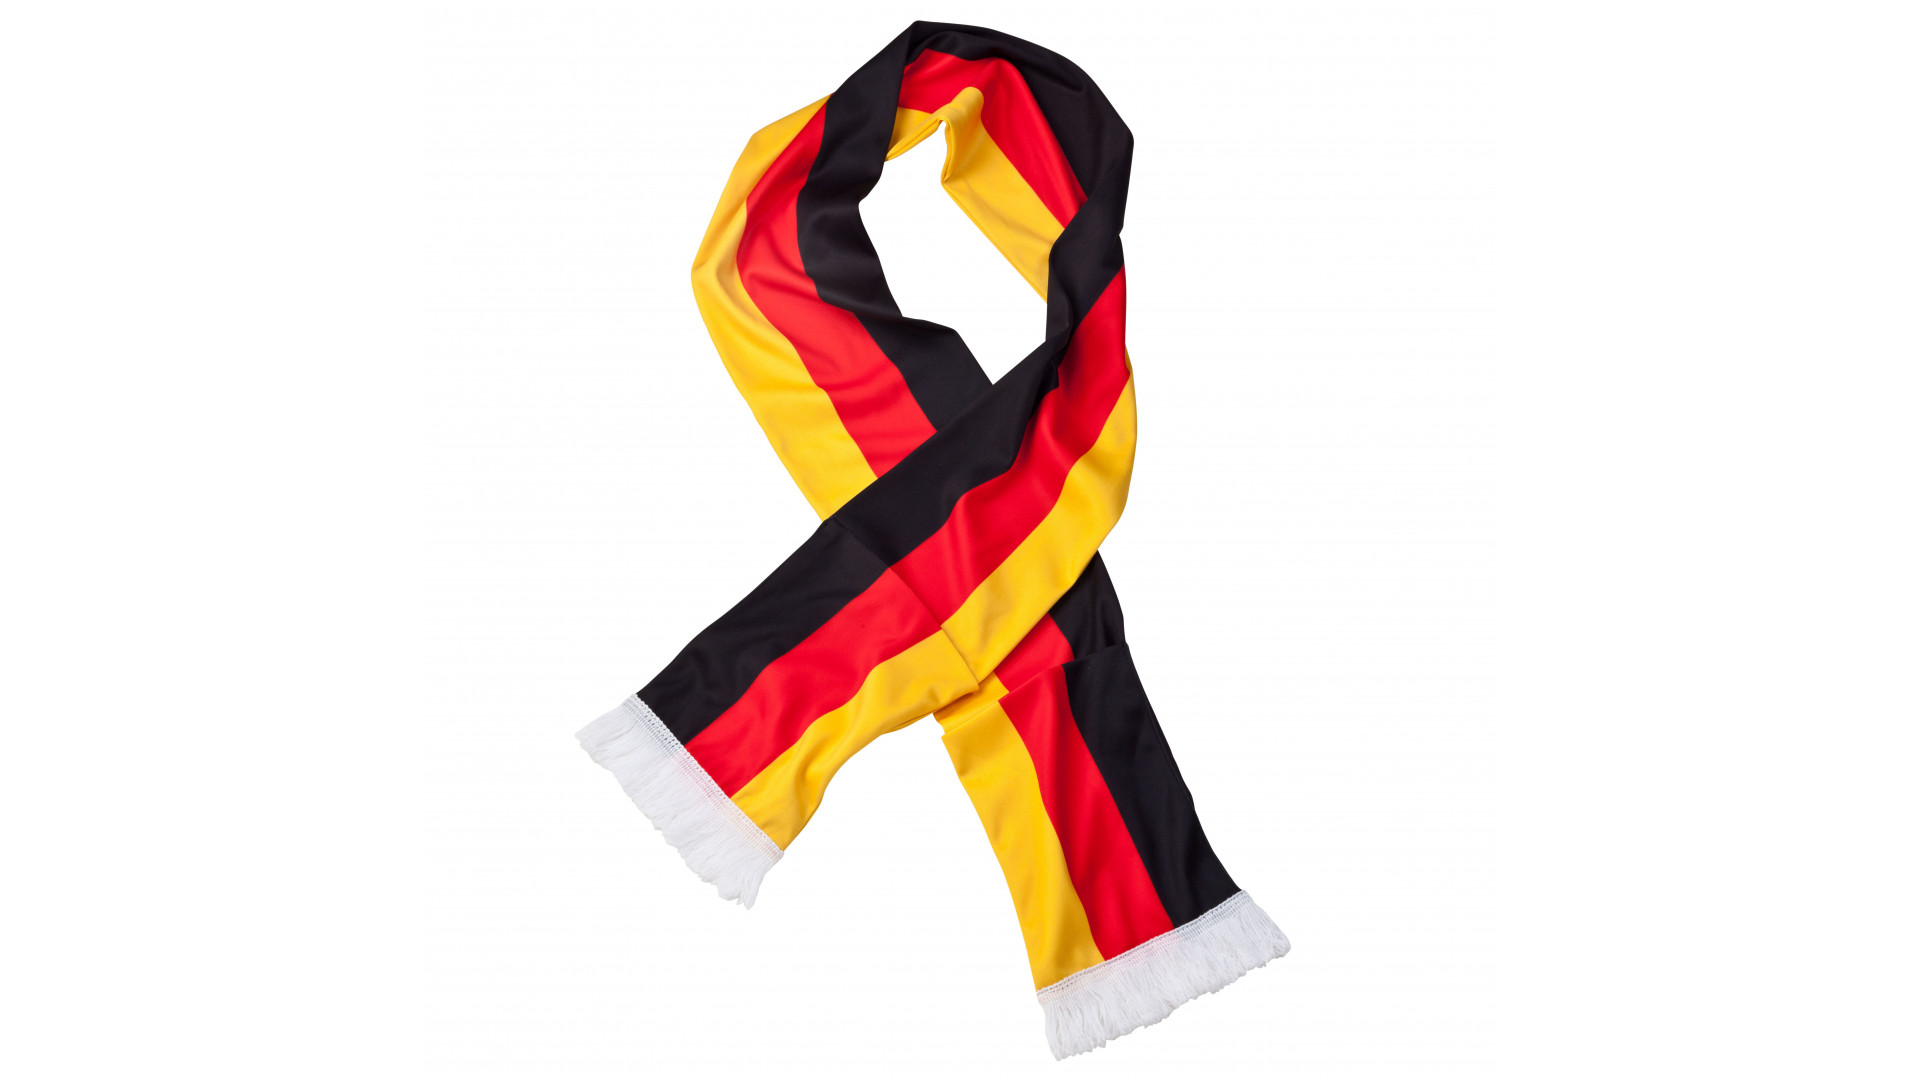 Deutschland Fanartikel mit Deinem Logo